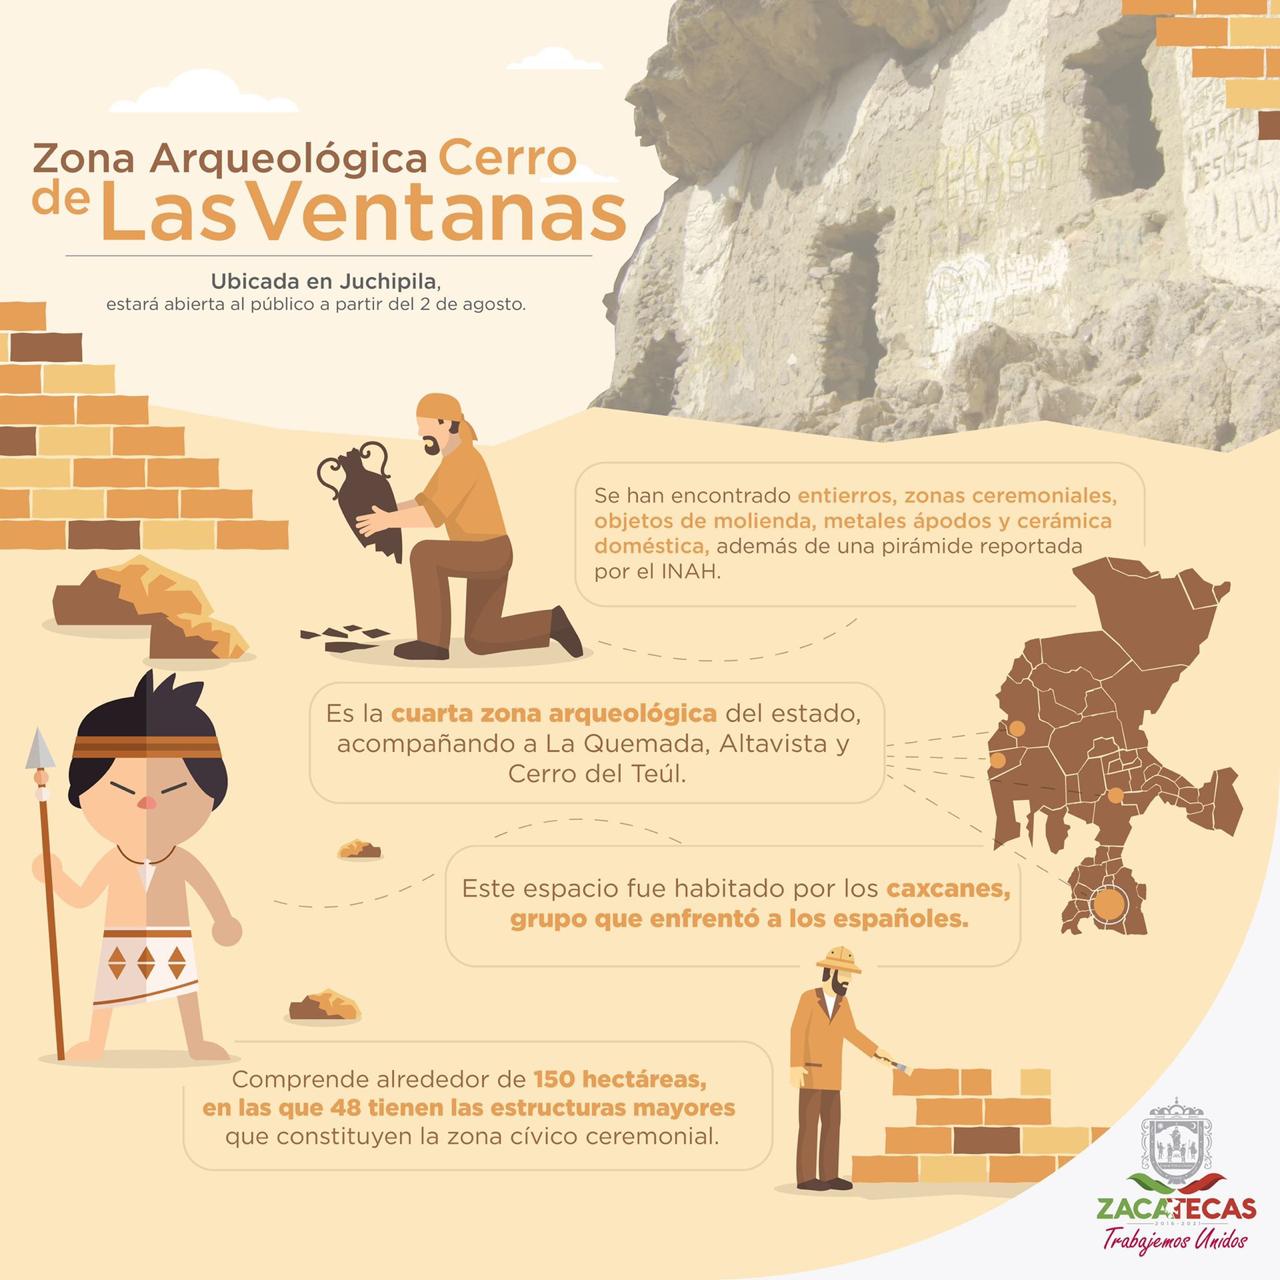 Es el cuarto centro arqueológico de Zacatecas.